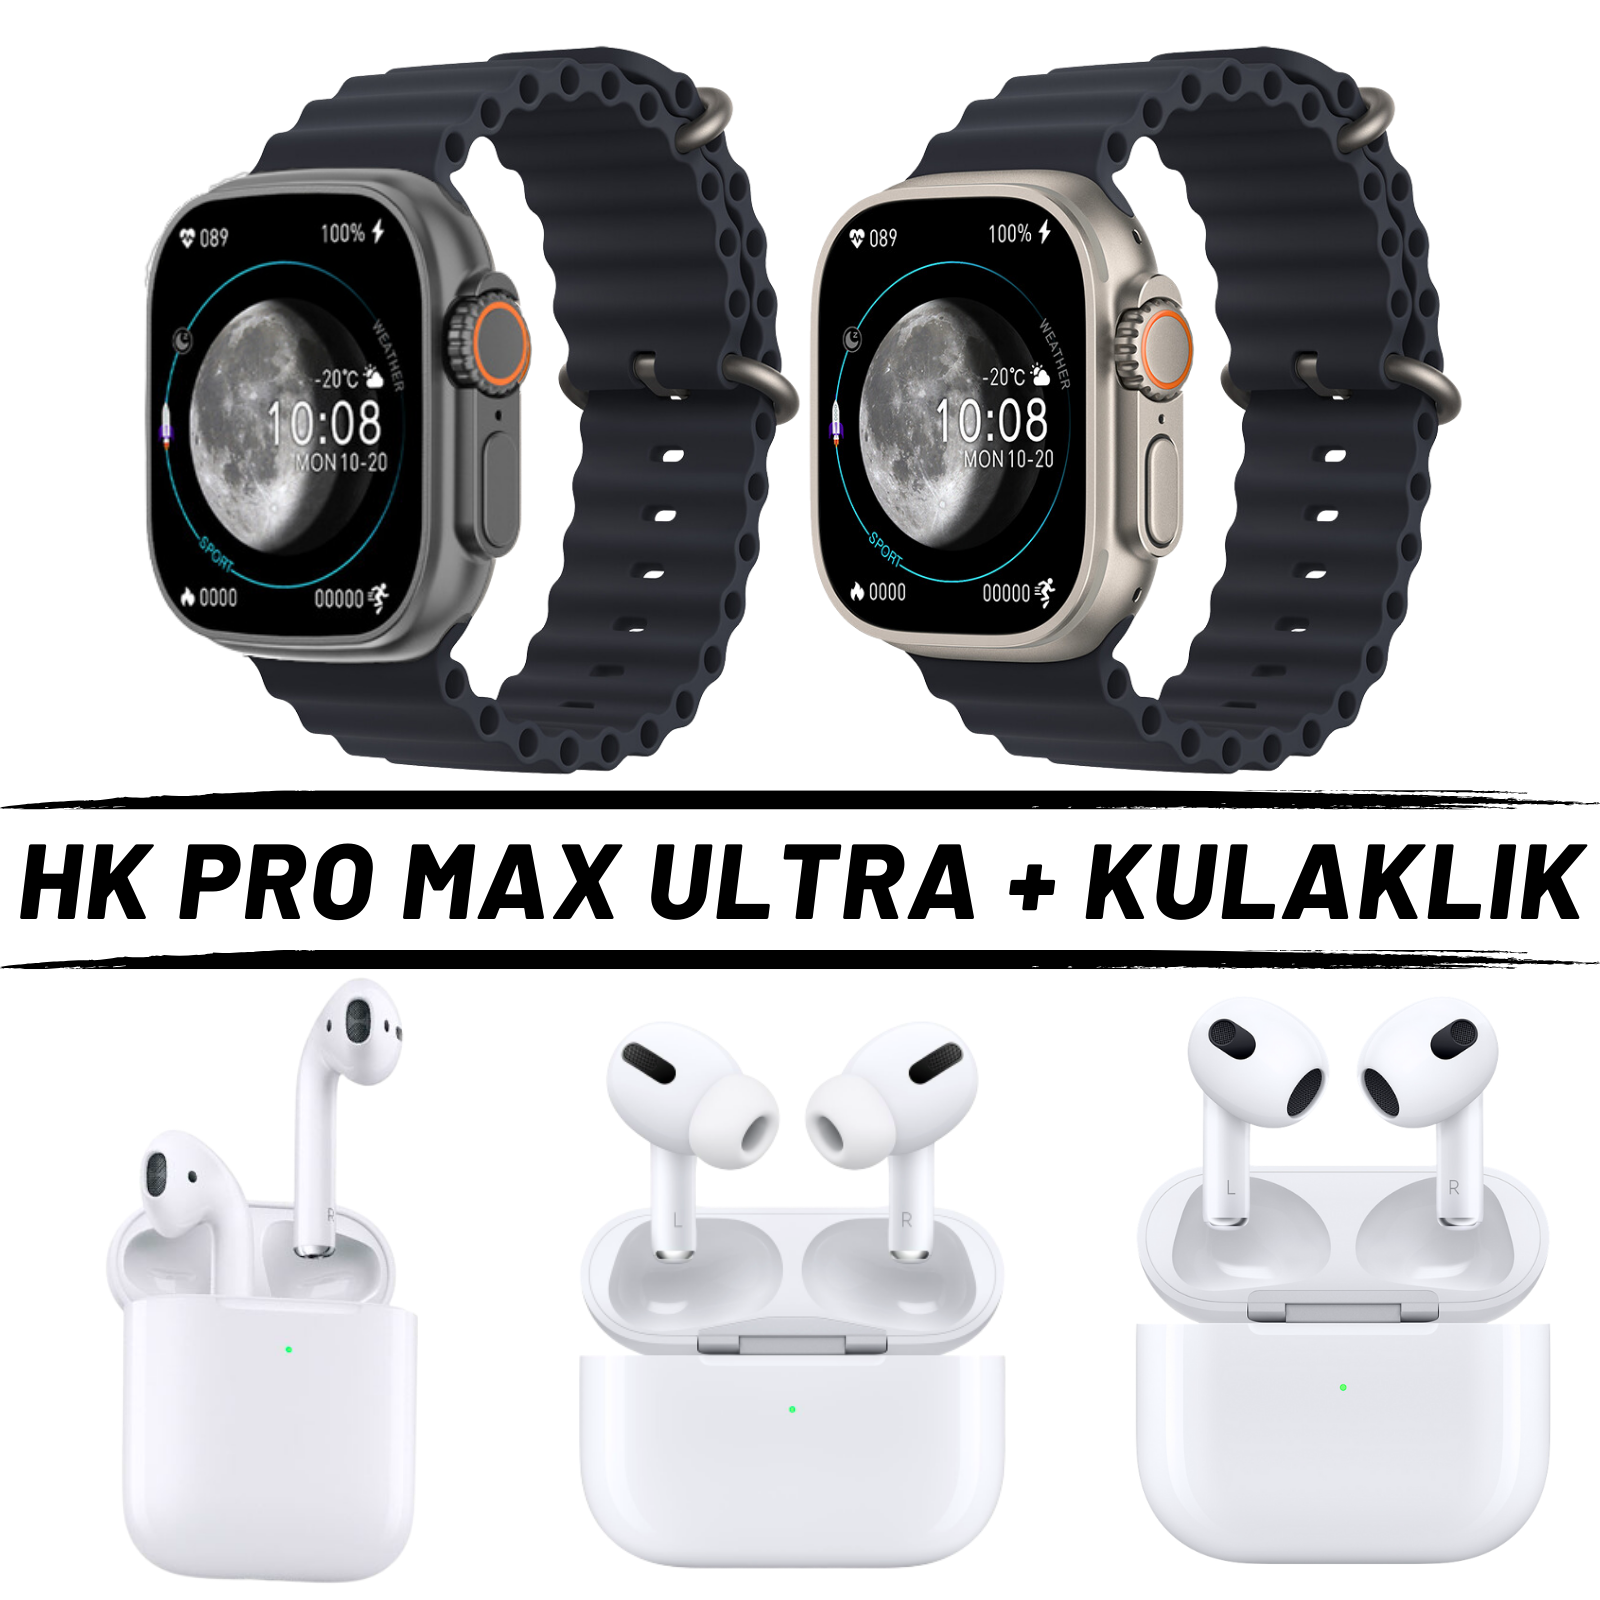 Watch Ultra HK Pro Max + Kulaklık